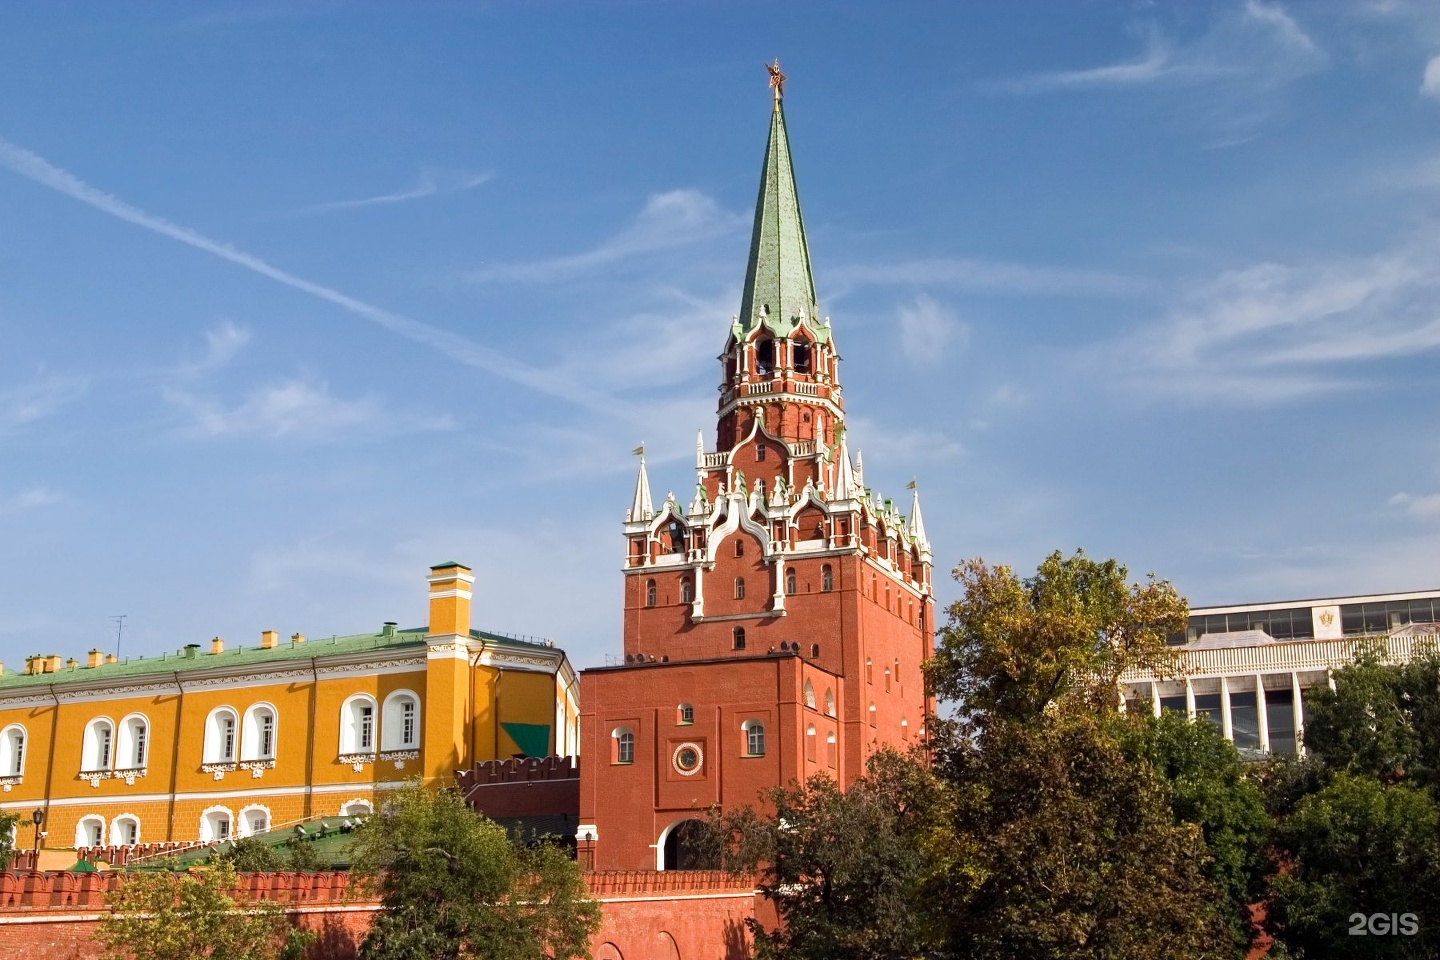 кутафья и троицкая башни кремля